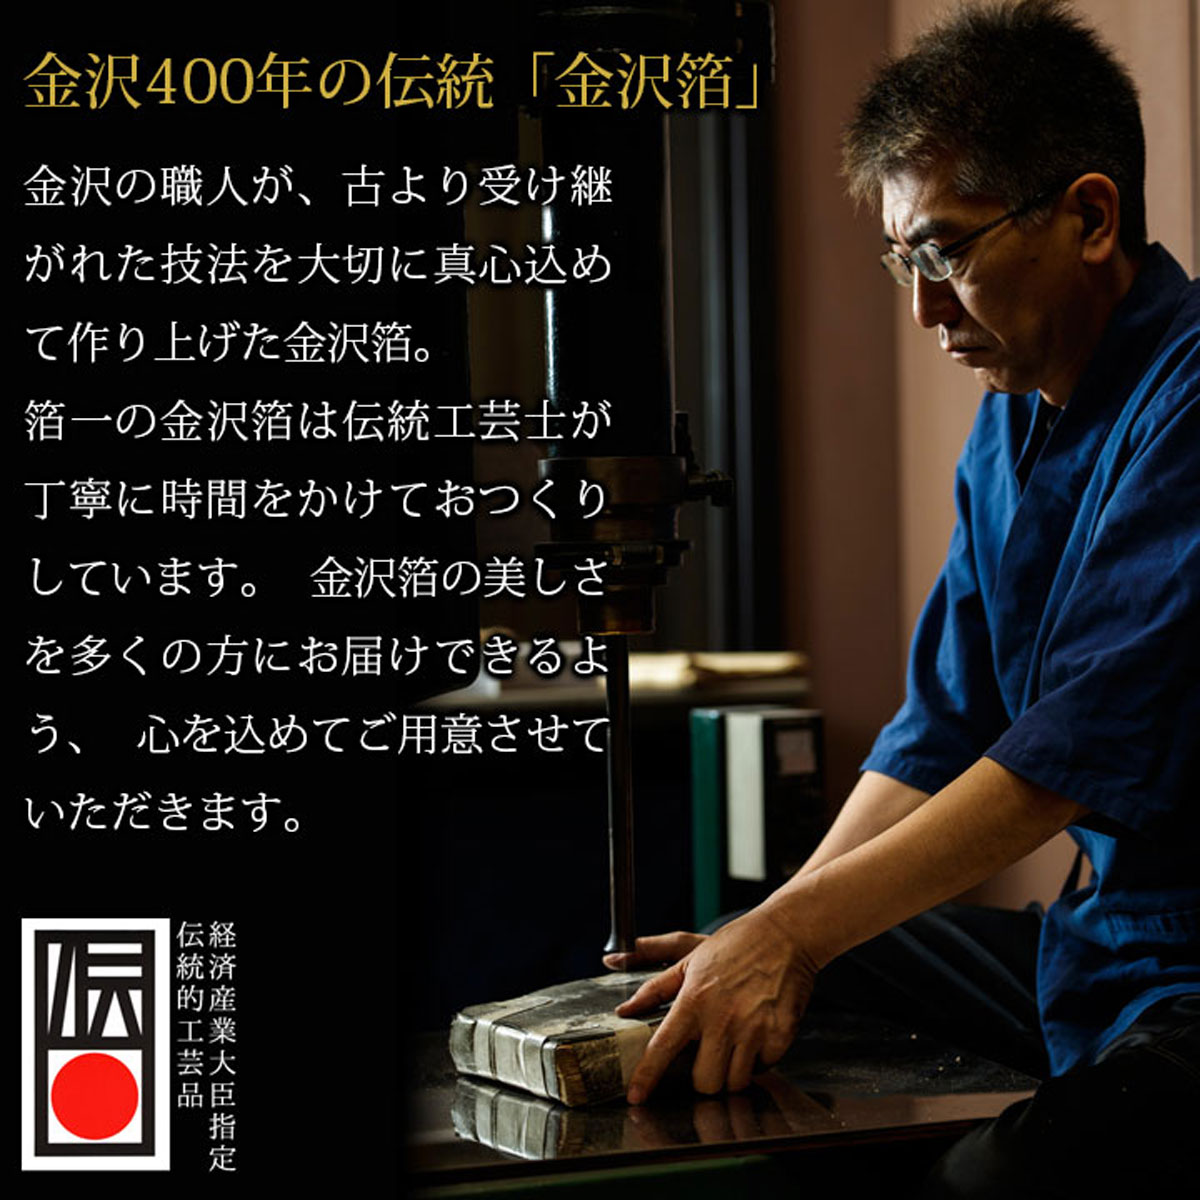 SHIKISAI ボールペン KODAI 古代 プレゼント 長寿祝い 金沢金箔の箔一| HAKUICHI STYLE